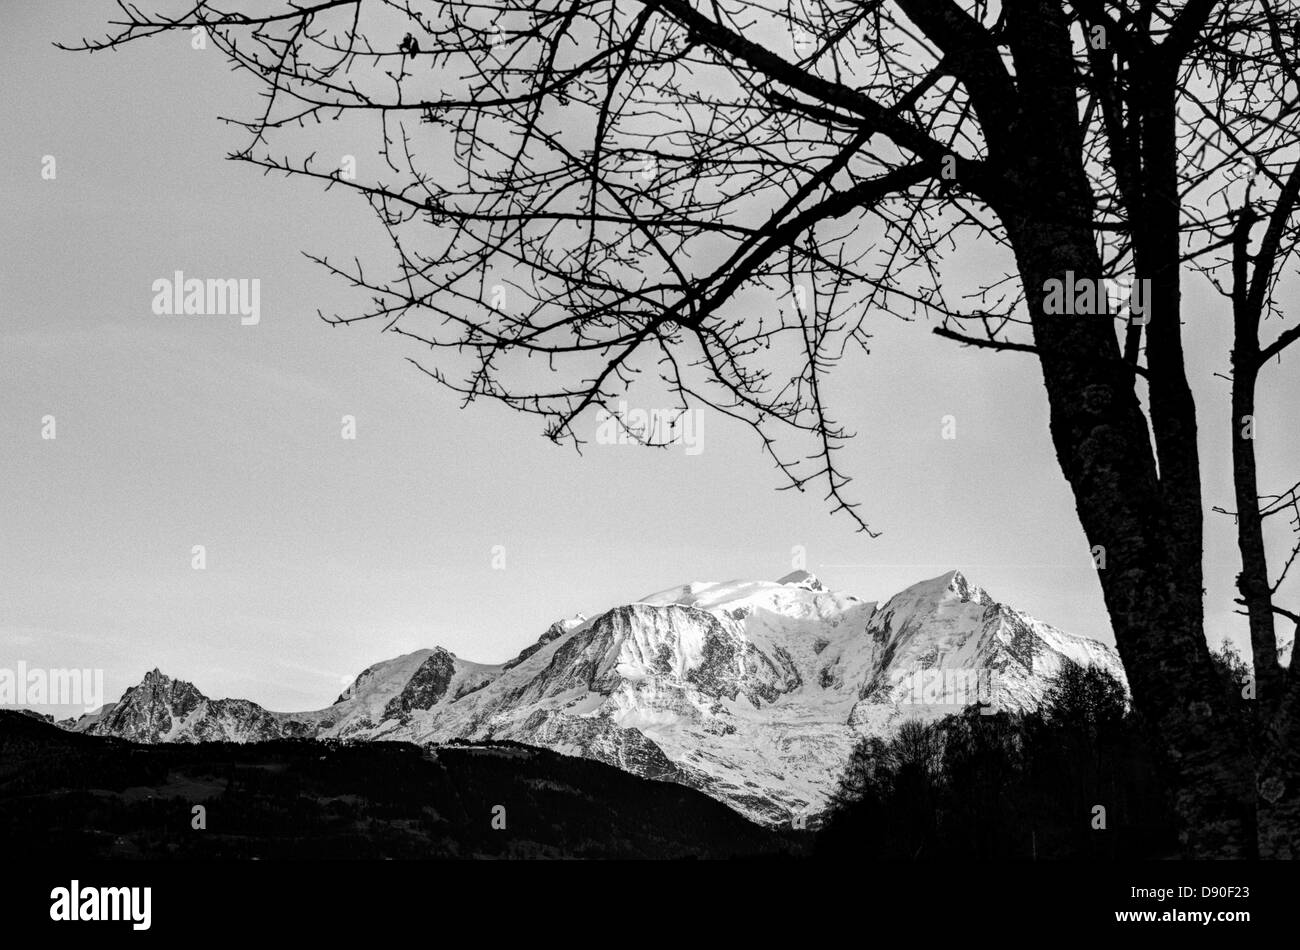 Französische Alpen Landschaft, Baum-Silhouette, die Festlegung der Zusammensetzung führt das Auge des Betrachters zu Schnee Mount Blanc, Haute - Savoie, Frankreich Stockfoto